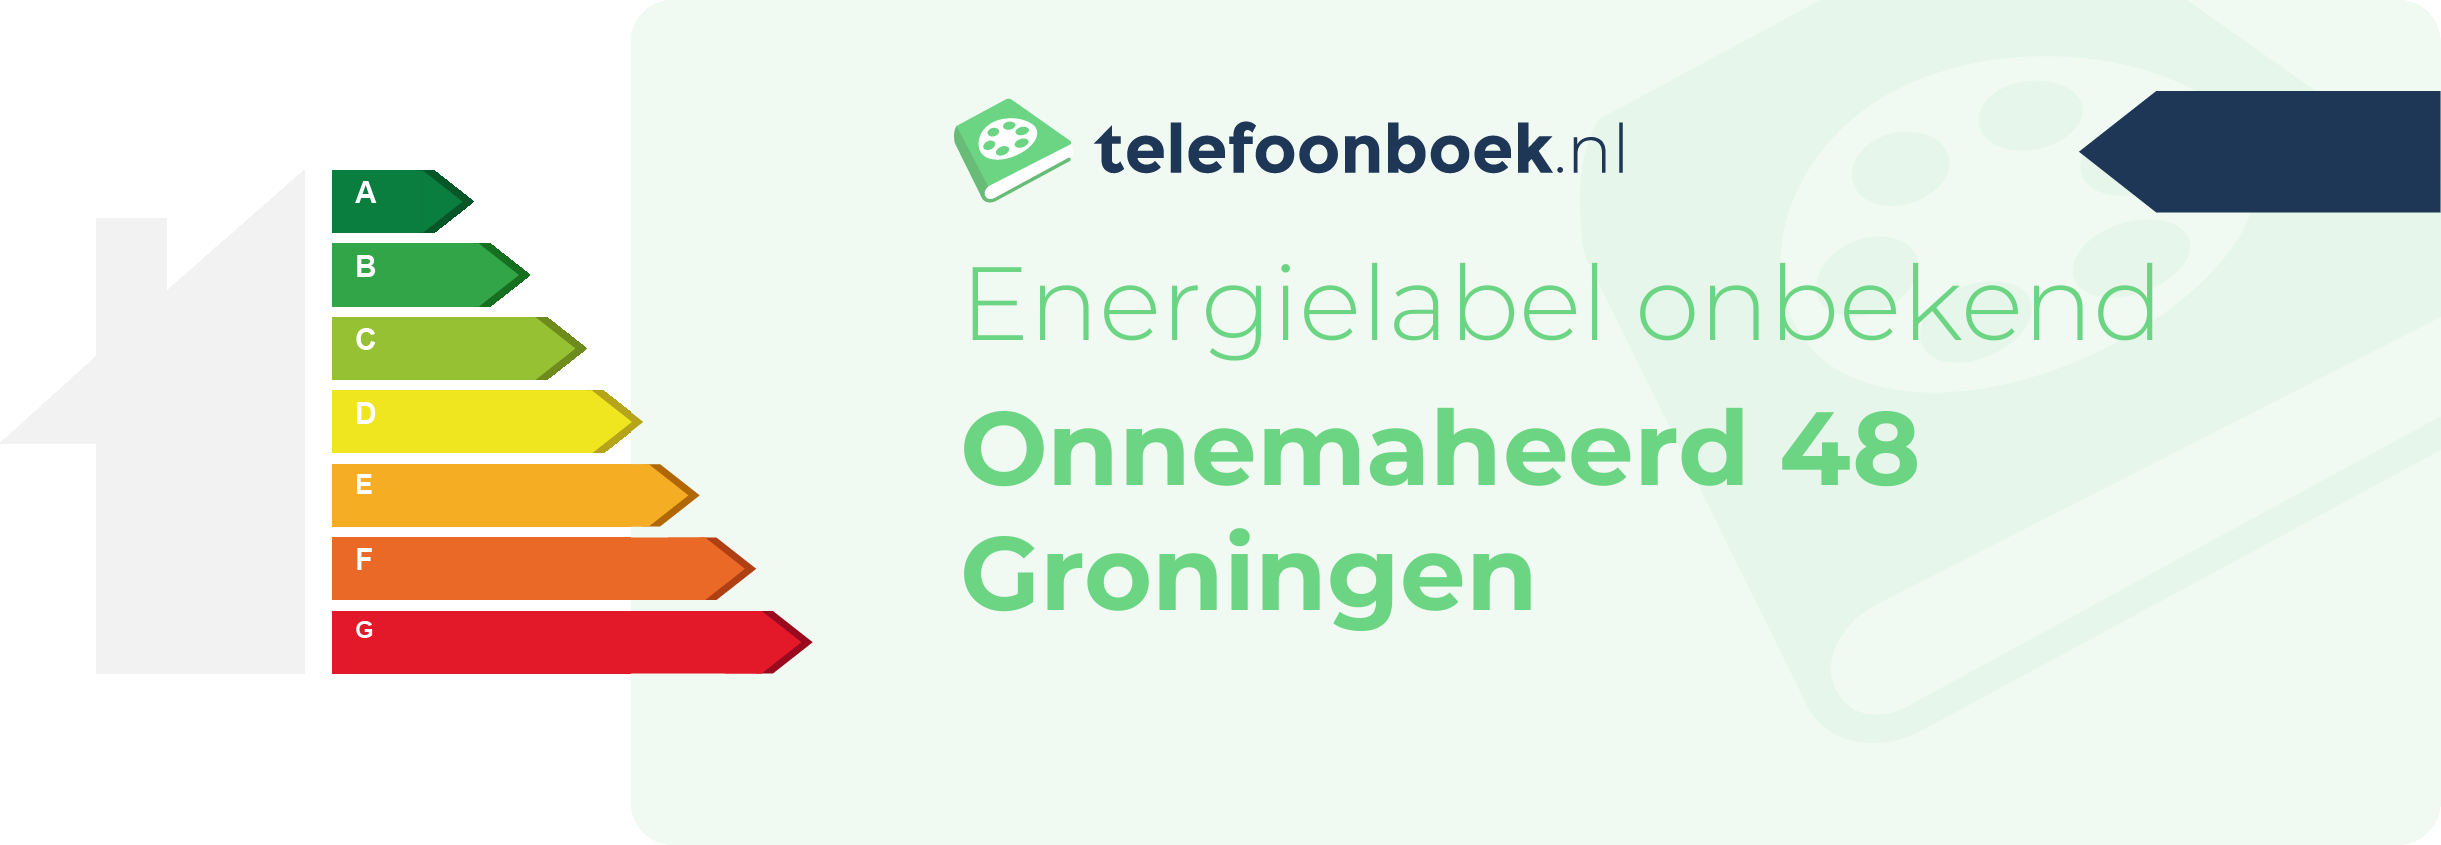 Energielabel Onnemaheerd 48 Groningen